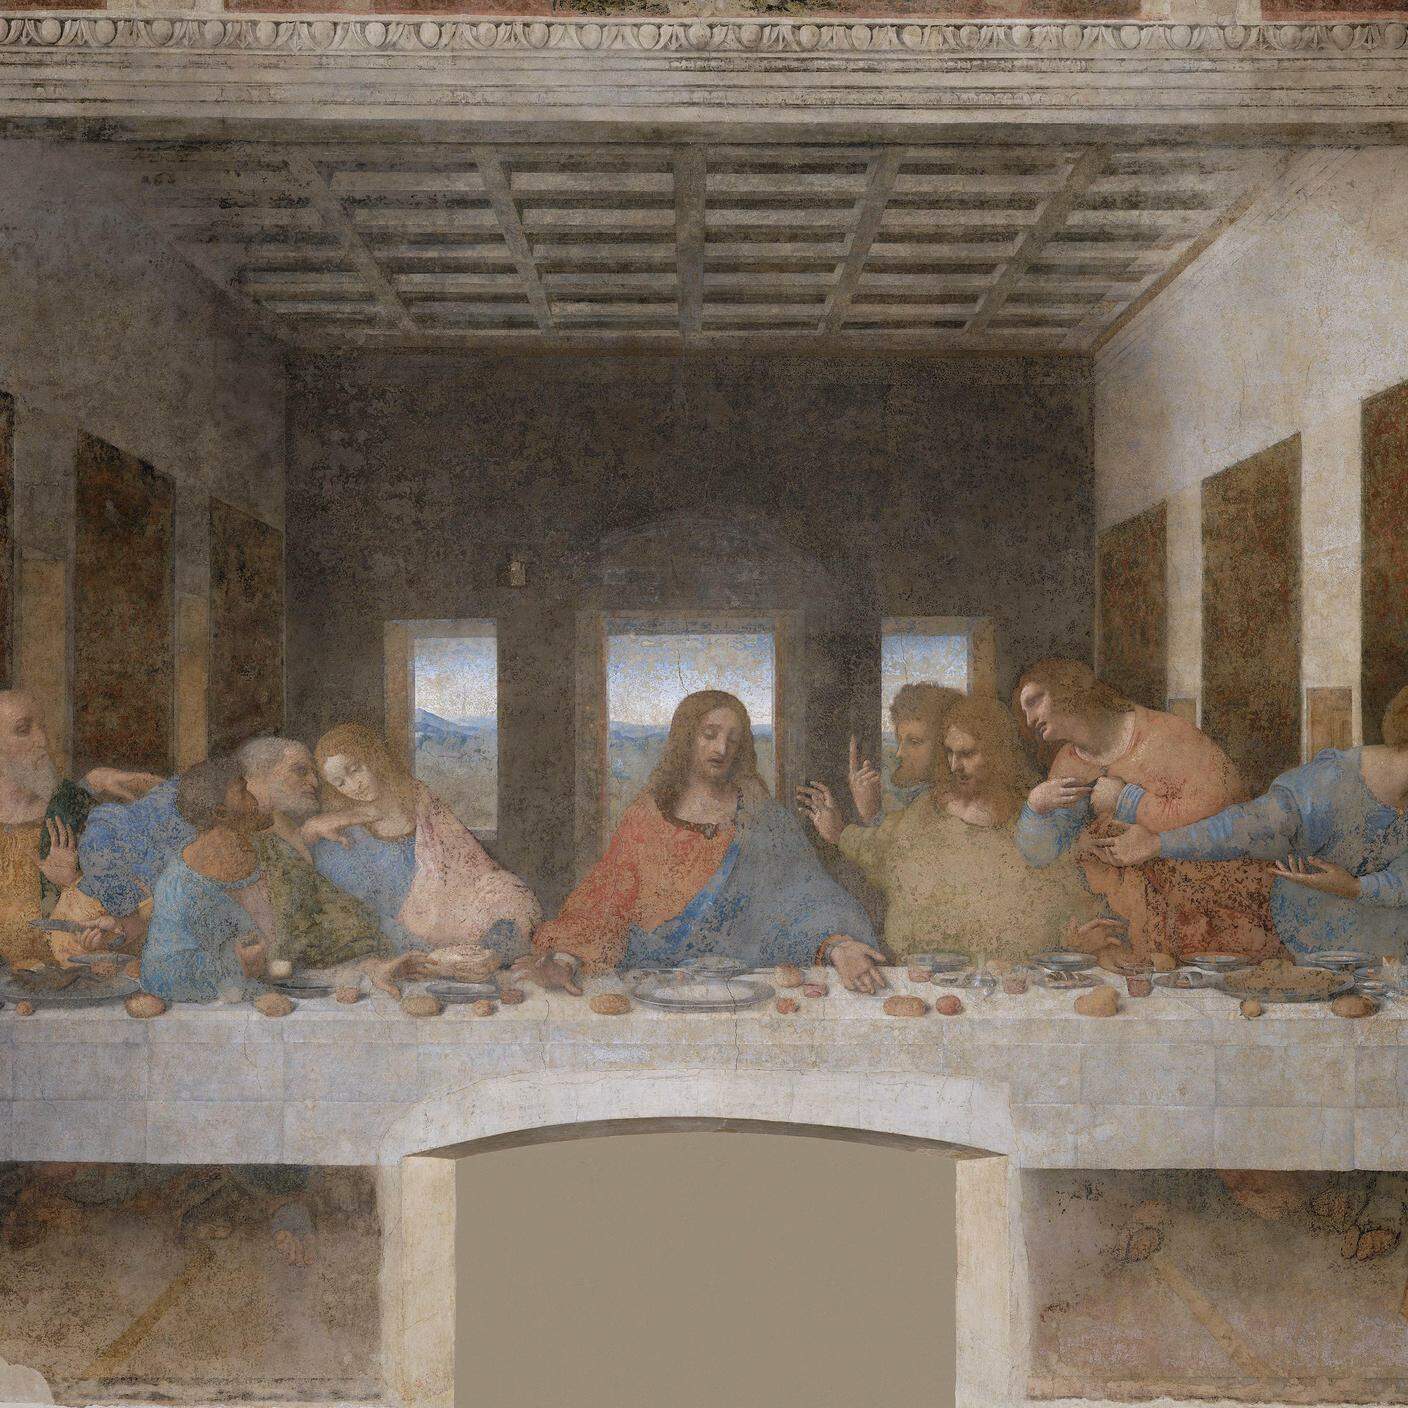 Leonardo Da Vinci, "Ultima cena" (1495-1498)